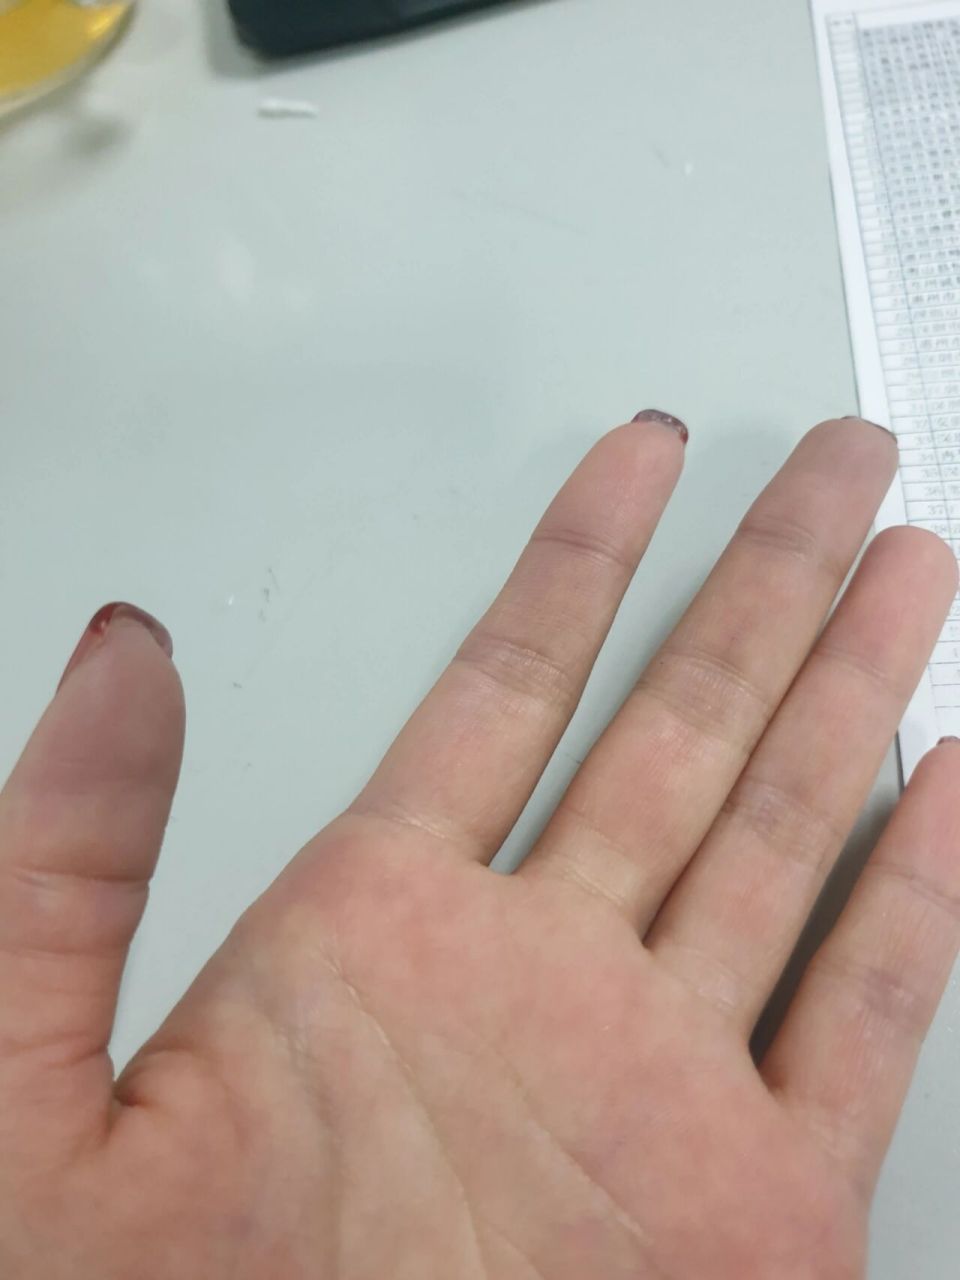 好担心,最近手指指尖会泛紫 说是冷到的,但是我穿的很厚,是不是身体出